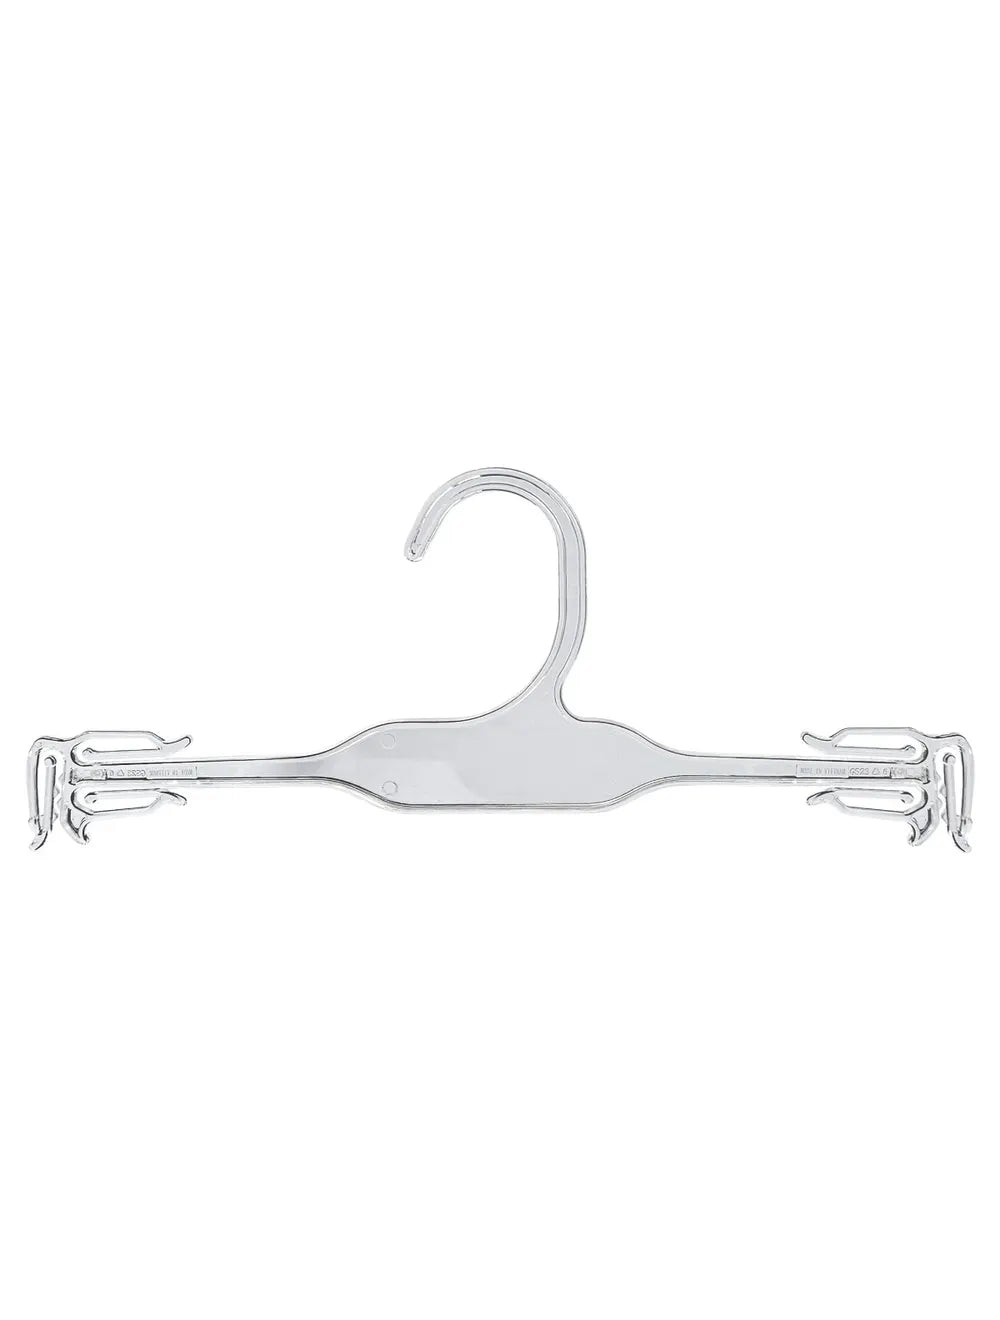 Lingerie & Swimsuit Hanger 10" | Clear | 100 Pack